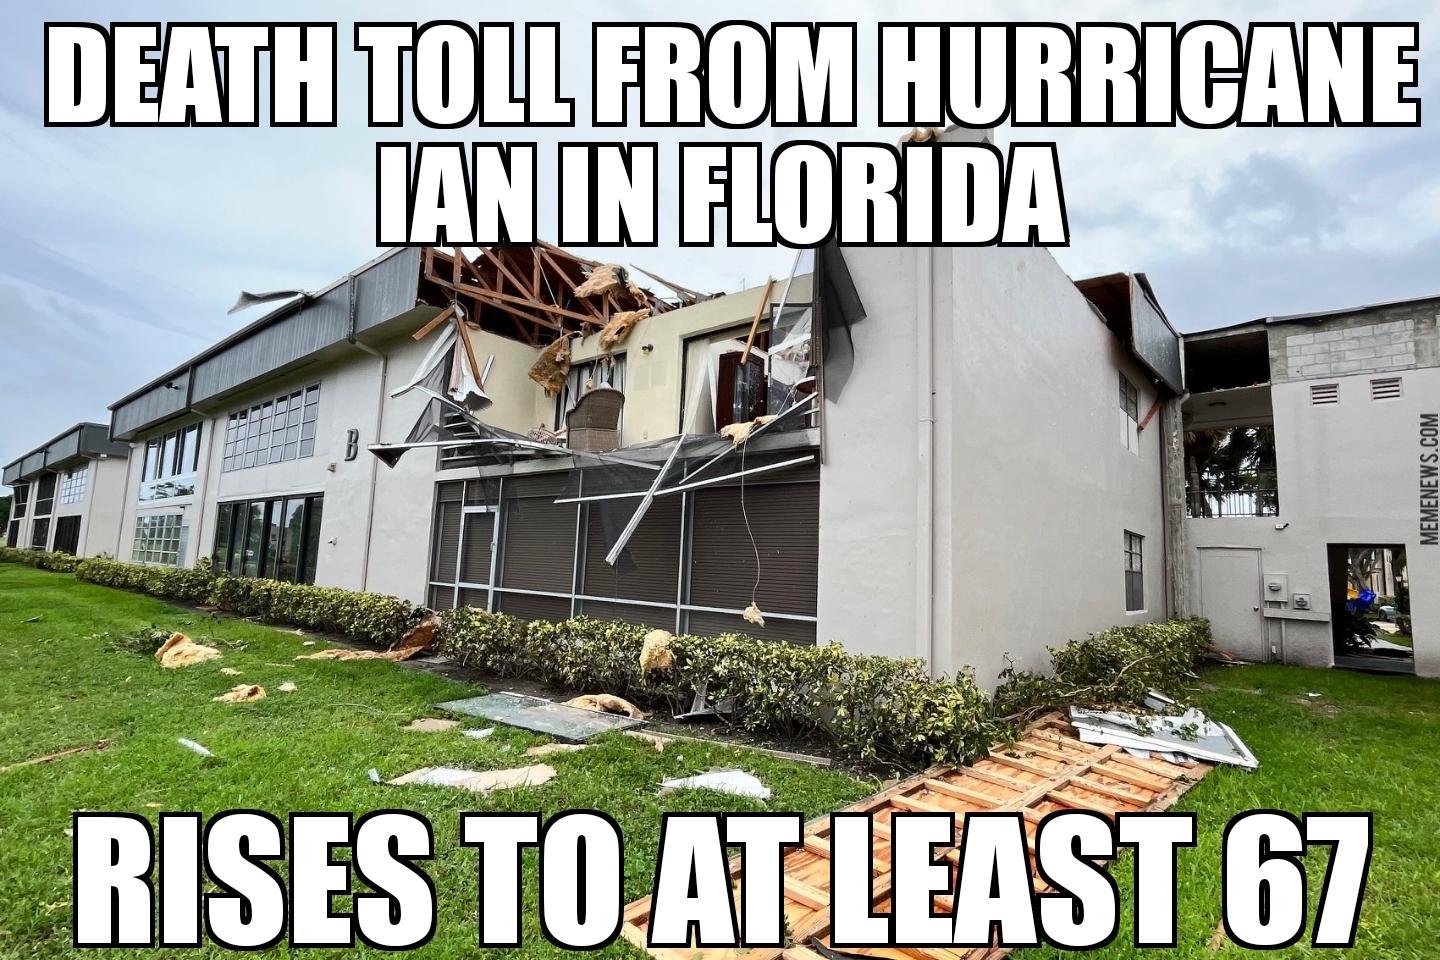 Hurricane Ian deaths rise